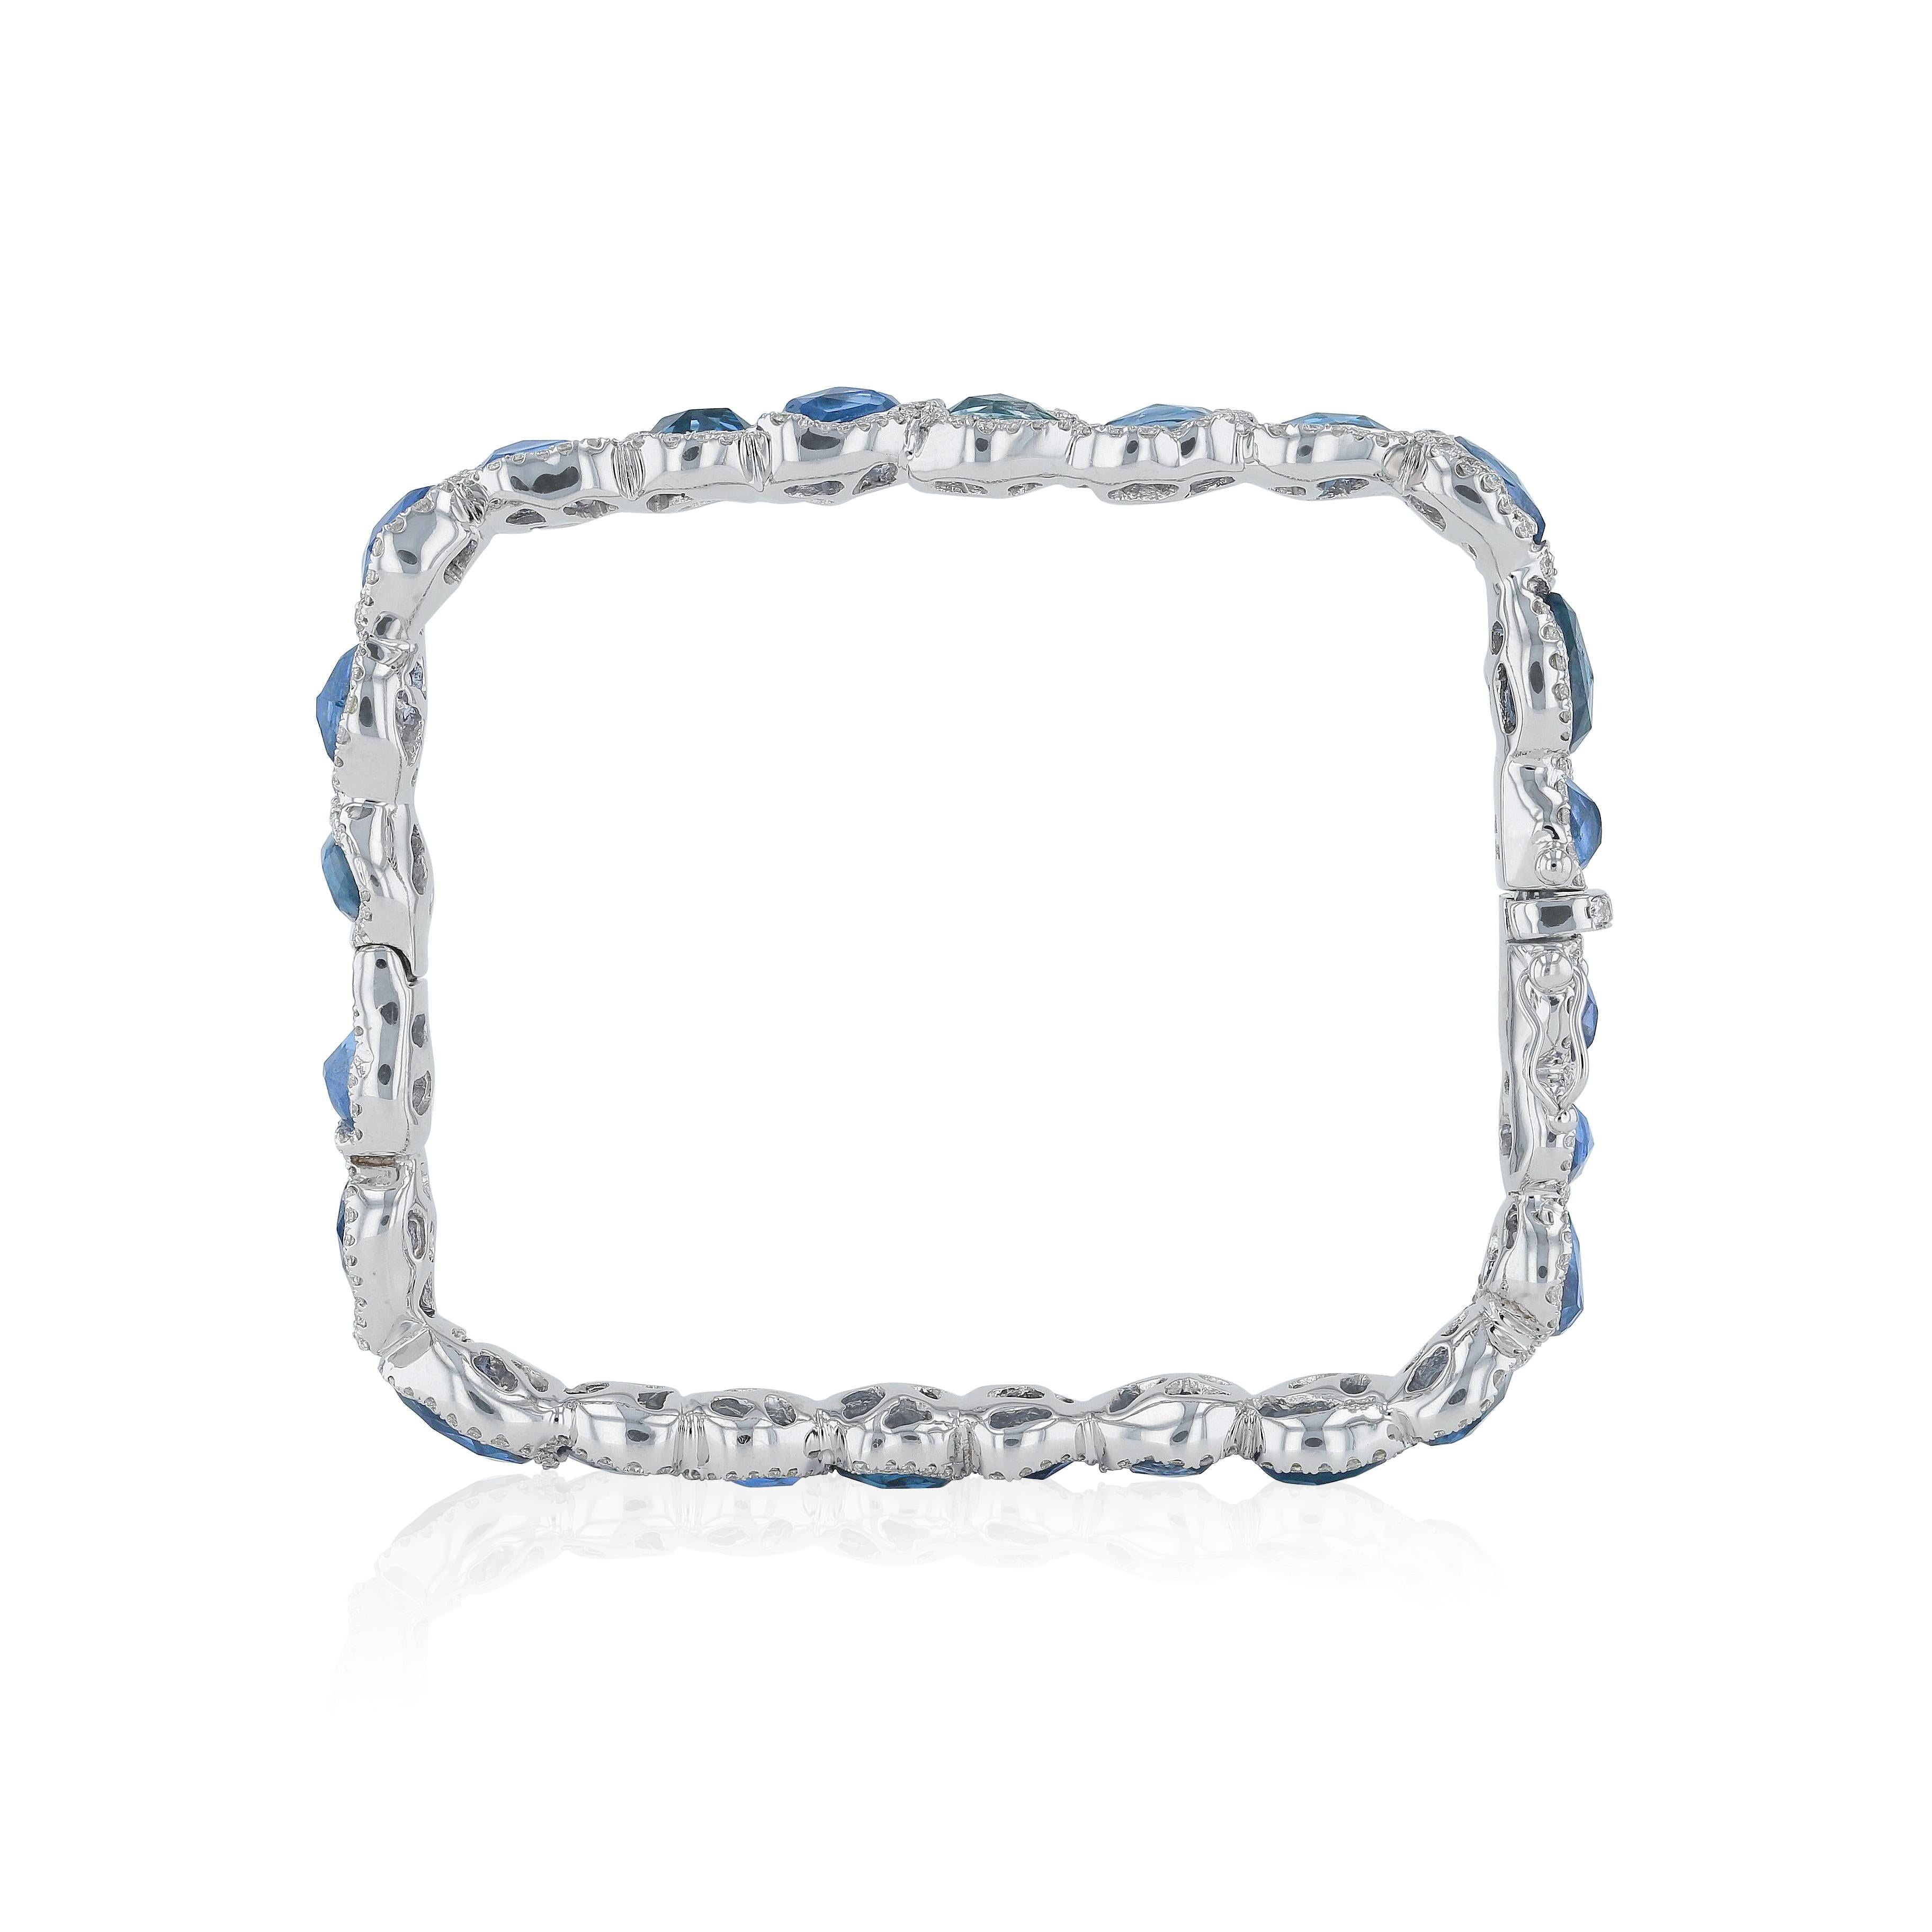 Dieses Armband in moderner Handwerkskunst und Design ist für mutige und einzigartige Frauen gedacht. Es ist definitiv ein Statement, inspiriert von kühner Ästhetik und natürlicher, rauer Schönheit. 
- Diamanten (Gesamtkaratgewicht: 1,88 ct) 
- Blaue